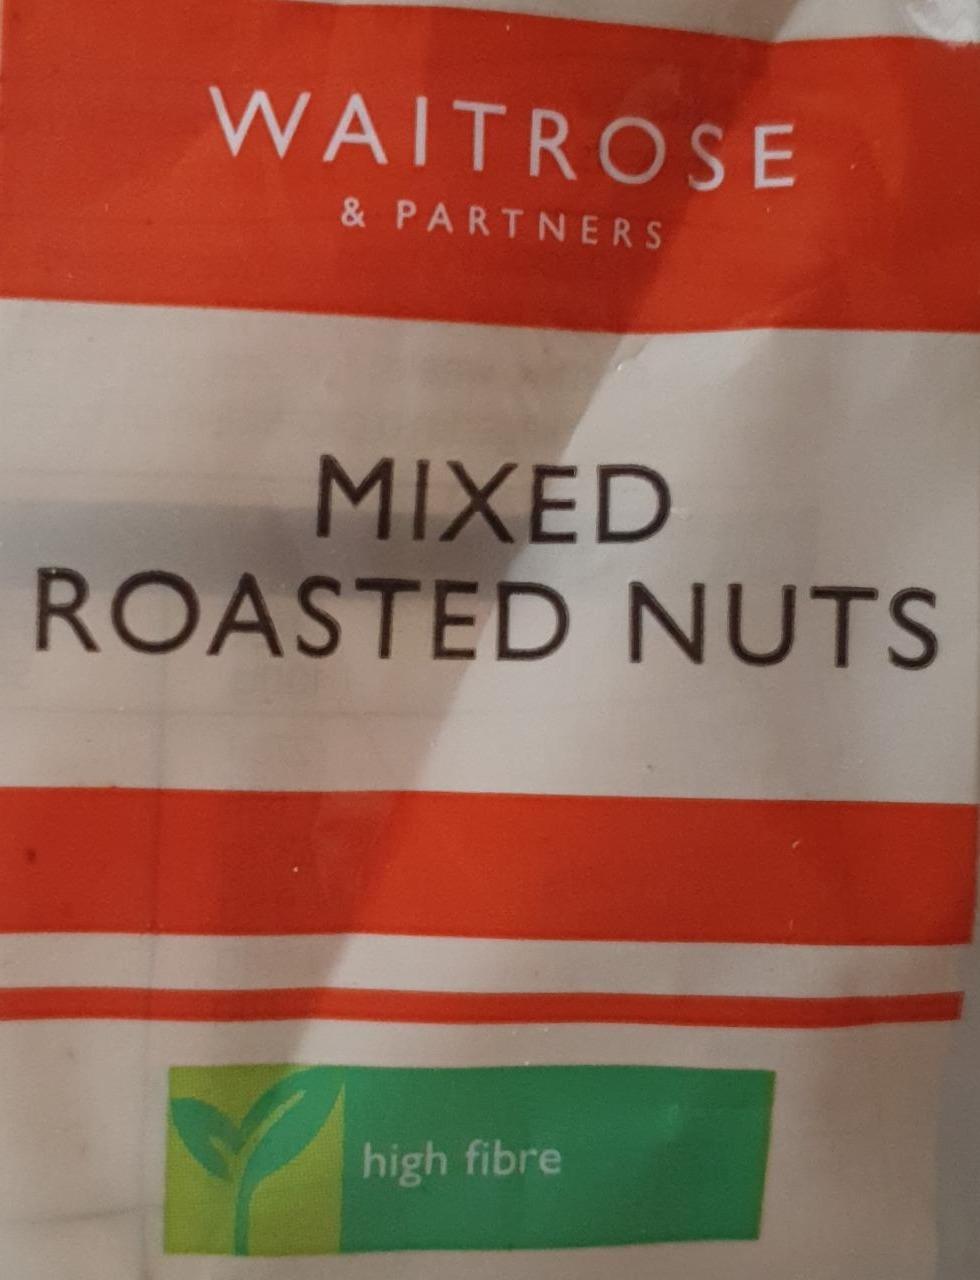 Fotografie - mixed roasted nuts Waitrose